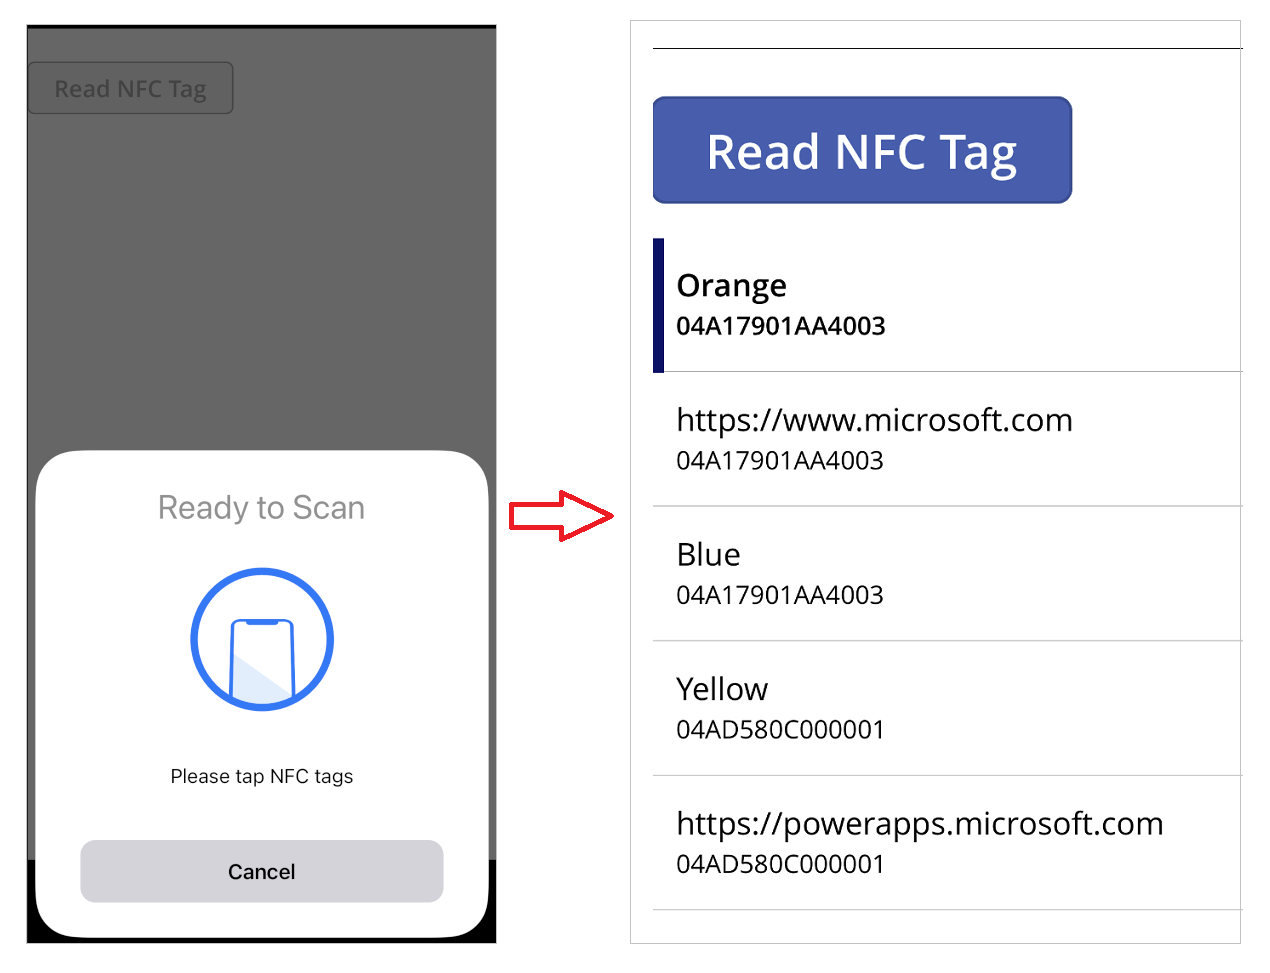 NFC Tag оқу мысалы және галерея ішіндегі нәтиже бар мобильді құрылғыдағы қолданба.